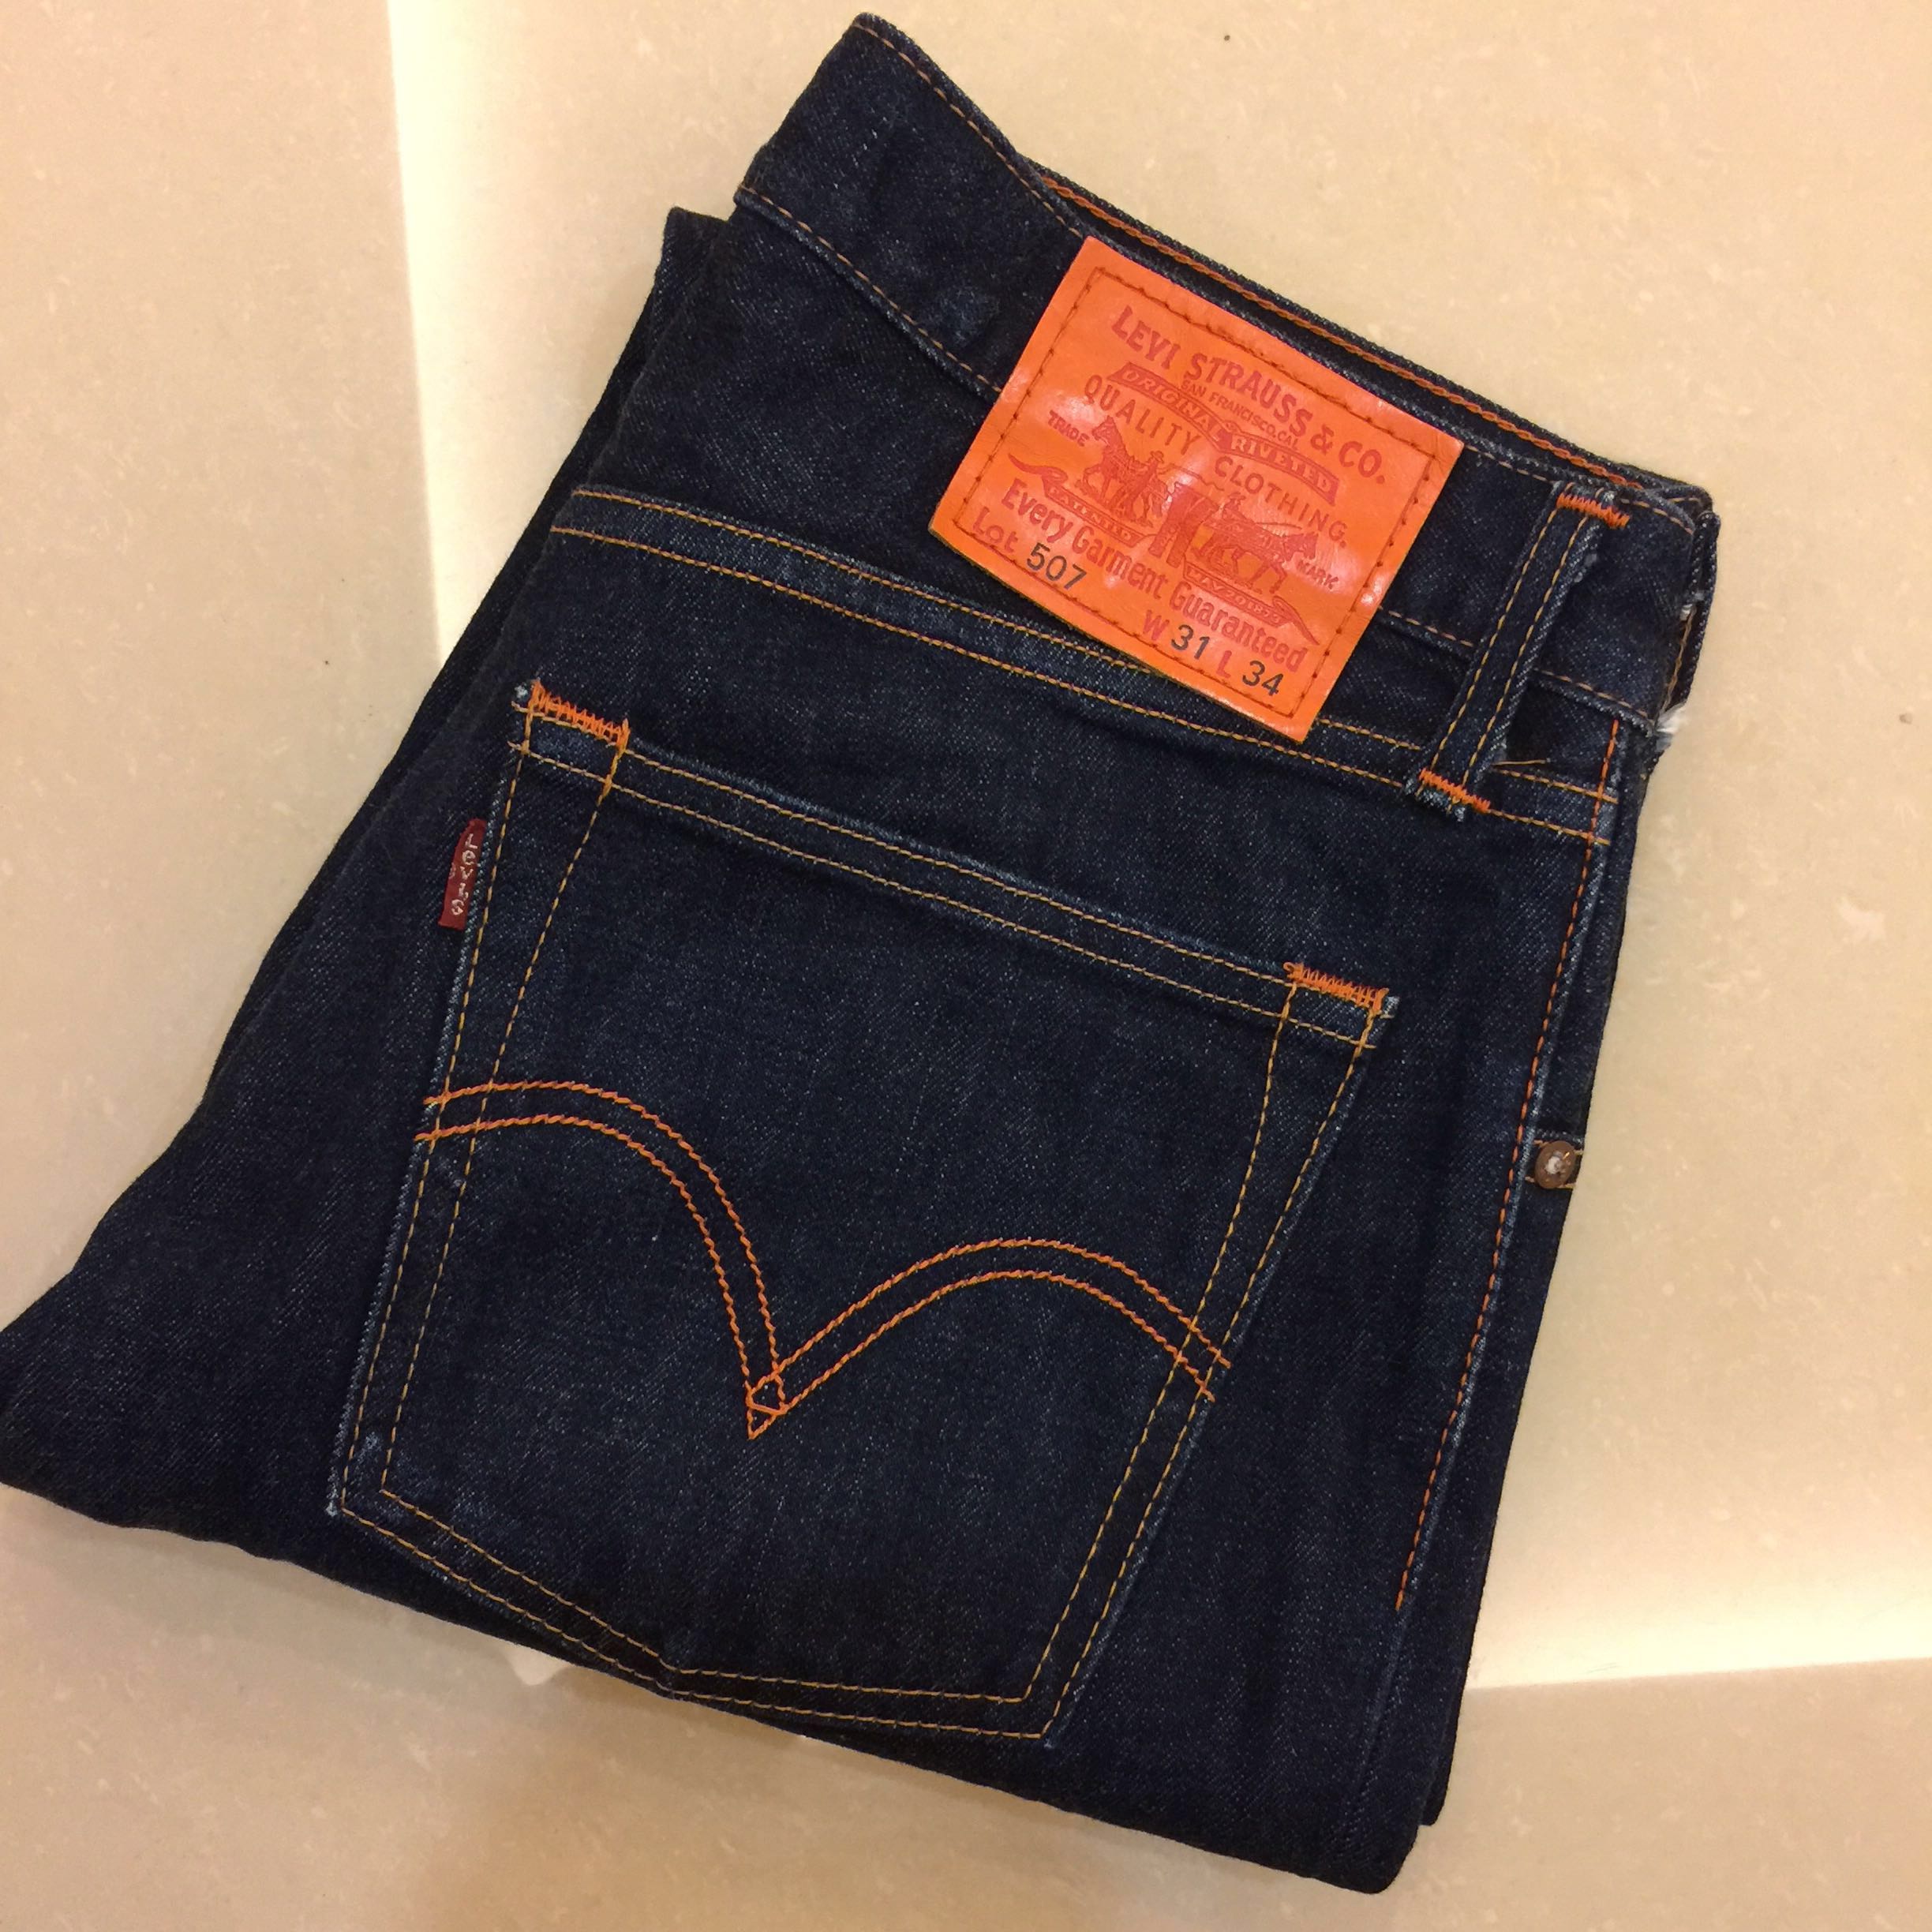 levis 507 jeans